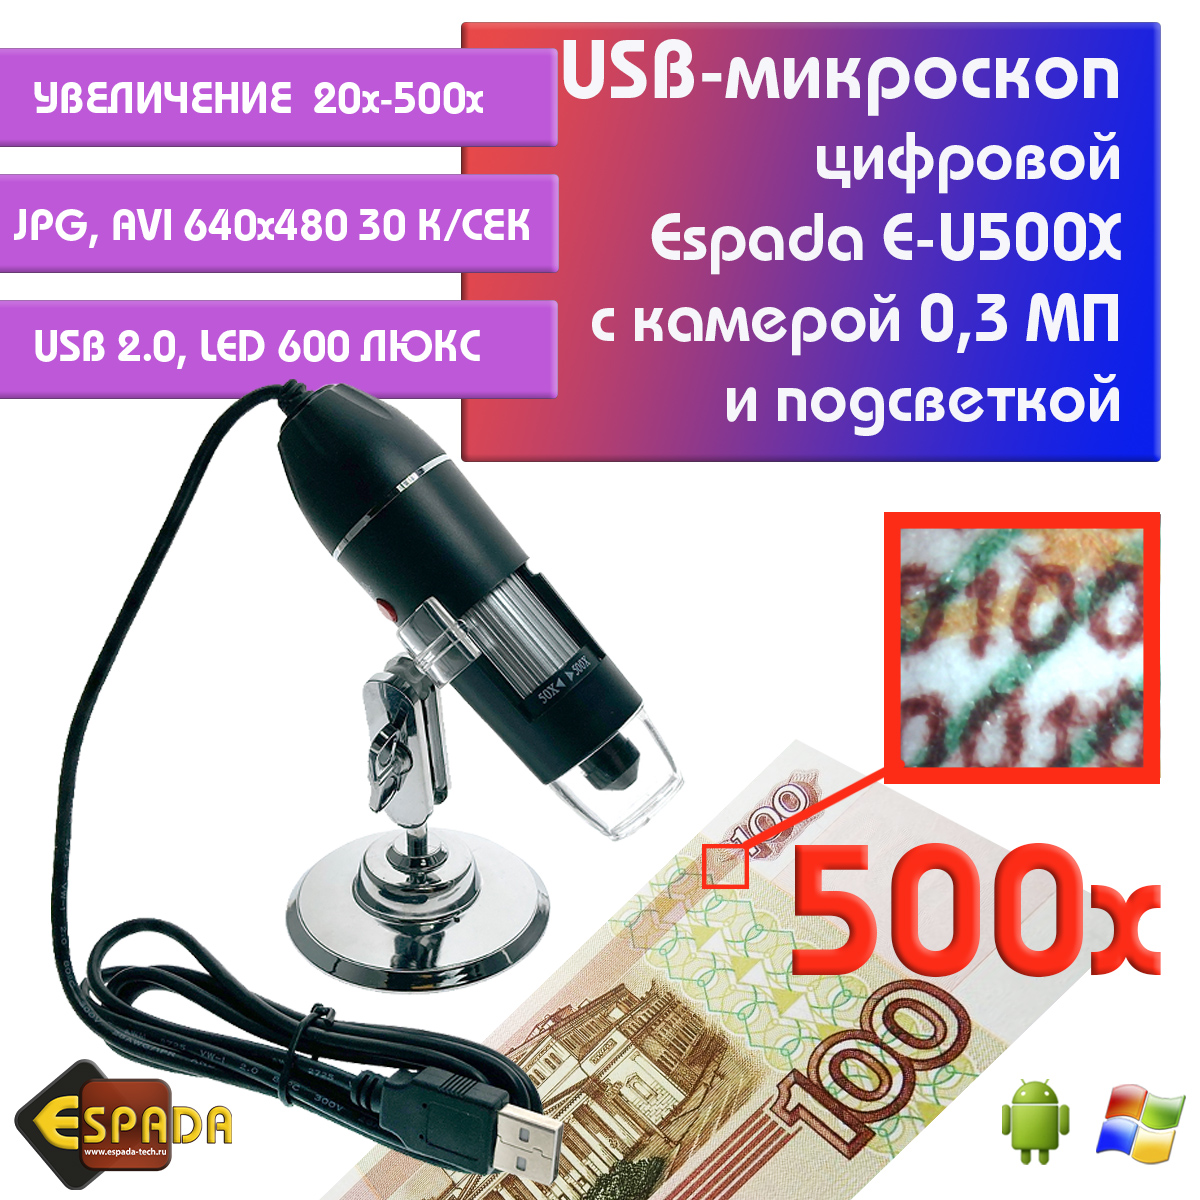 Портативный цифровой USB-микроскоп Espada E-U500X c камерой 0,3 МП и увеличением 500x видеокарта asus rx 550 2gb ph 550 2g